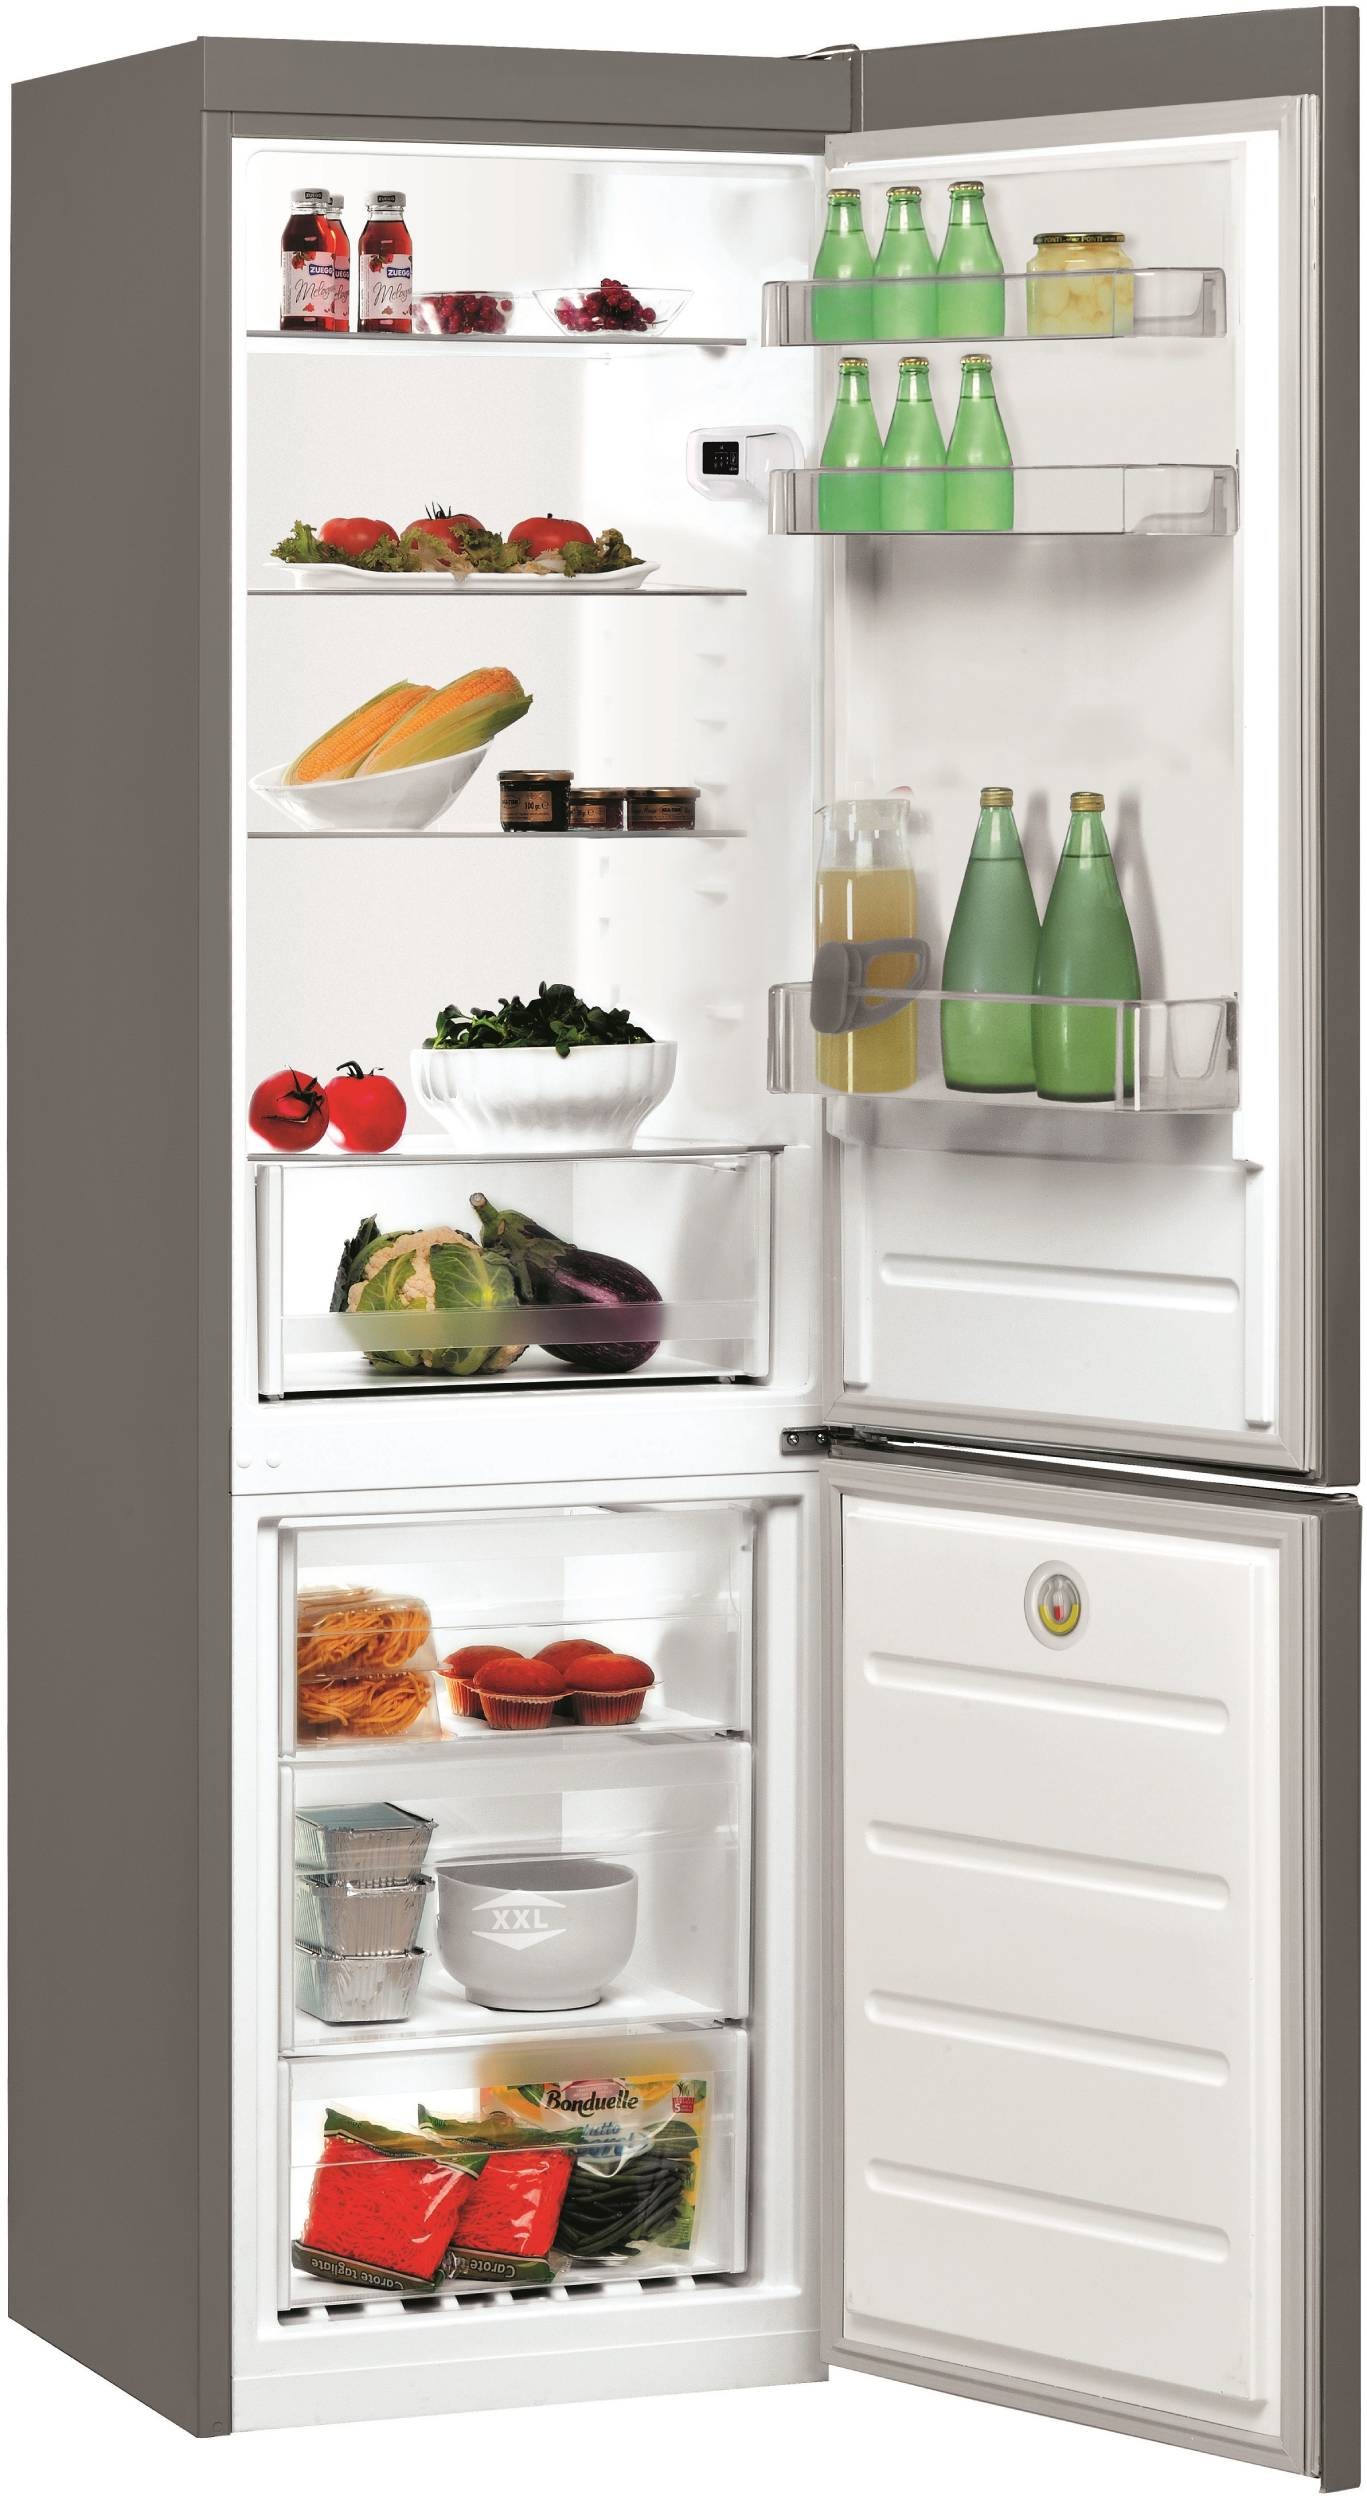 INDESIT Réfrigérateur congélateur bas  - LI8S2ES